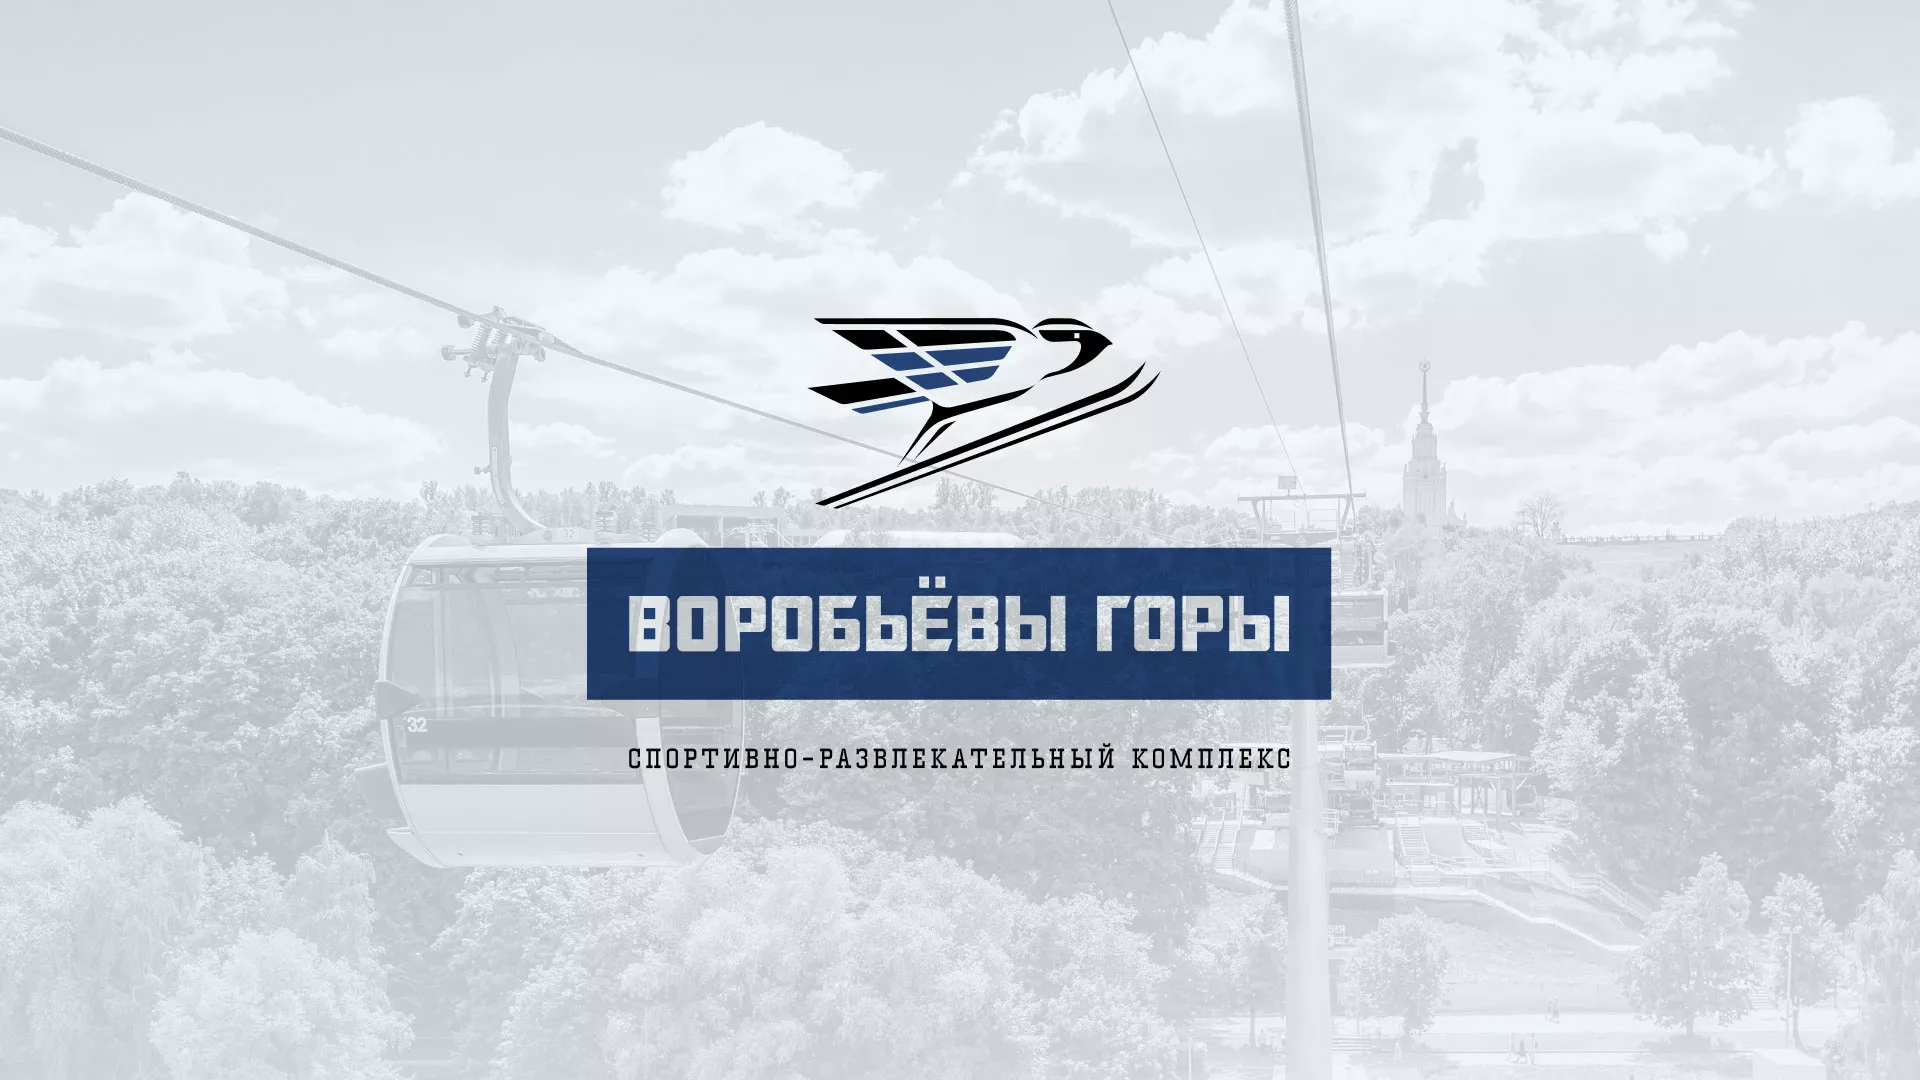 Разработка сайта в Дятьково для спортивно-развлекательного комплекса «Воробьёвы горы»